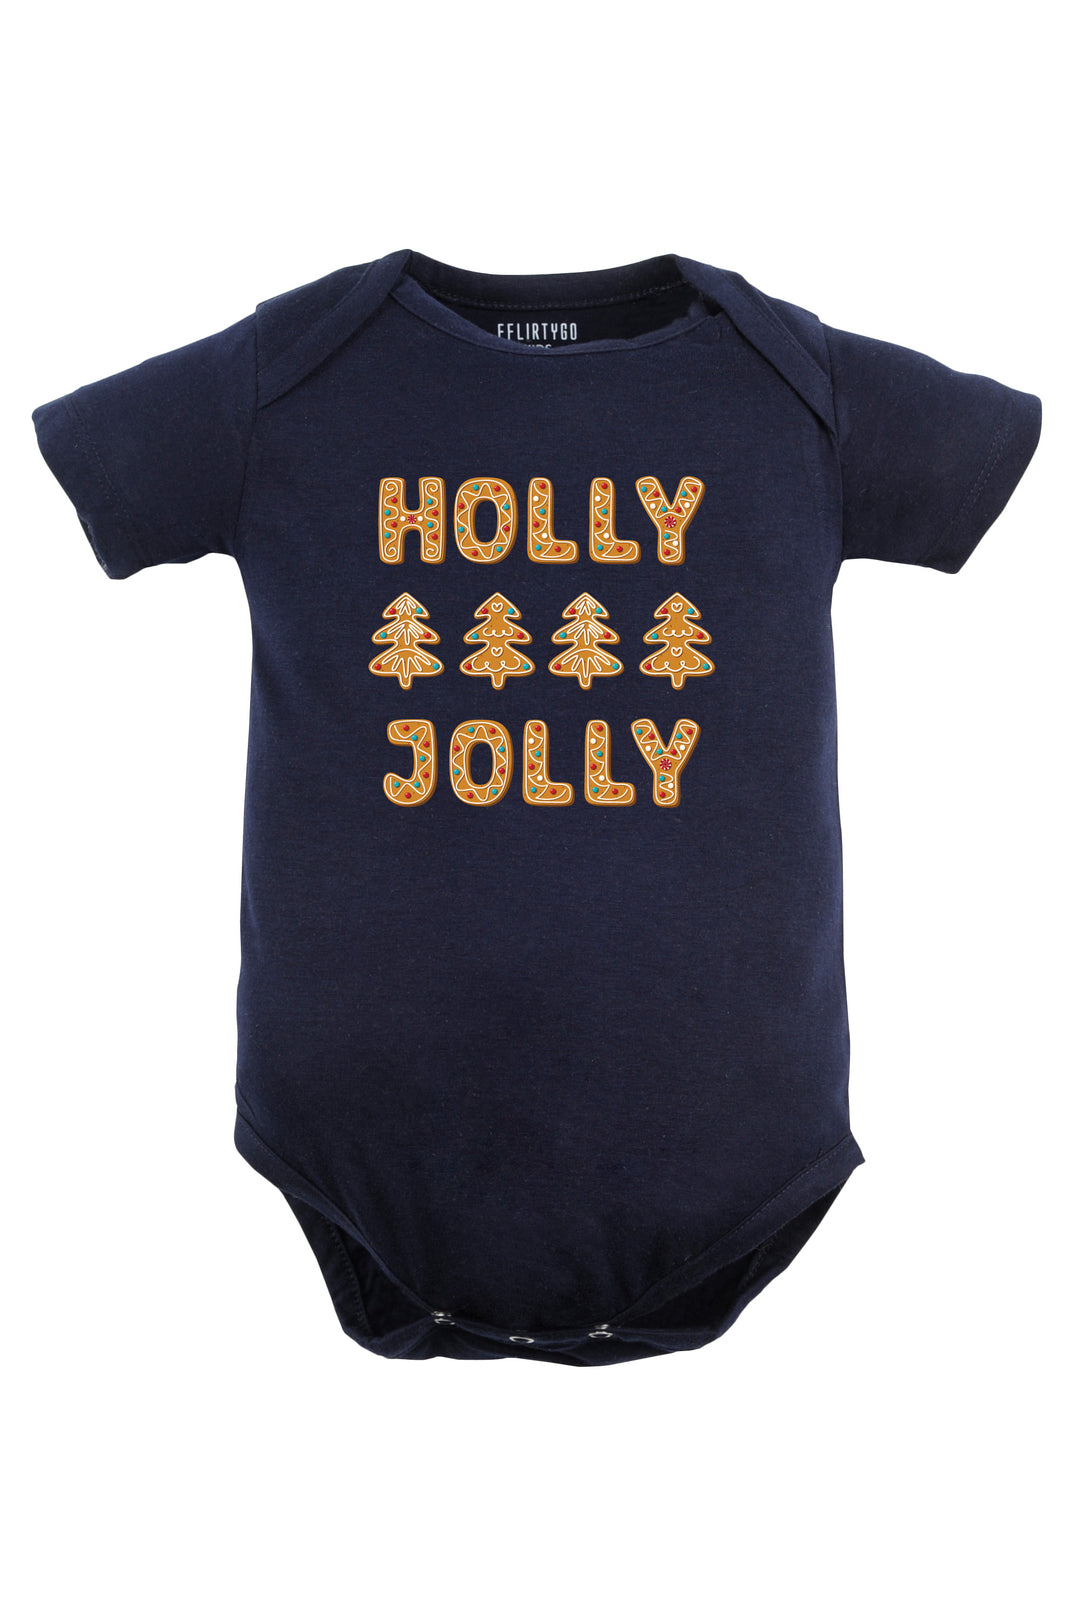 Holly Jolly Baby Romper | Onesies